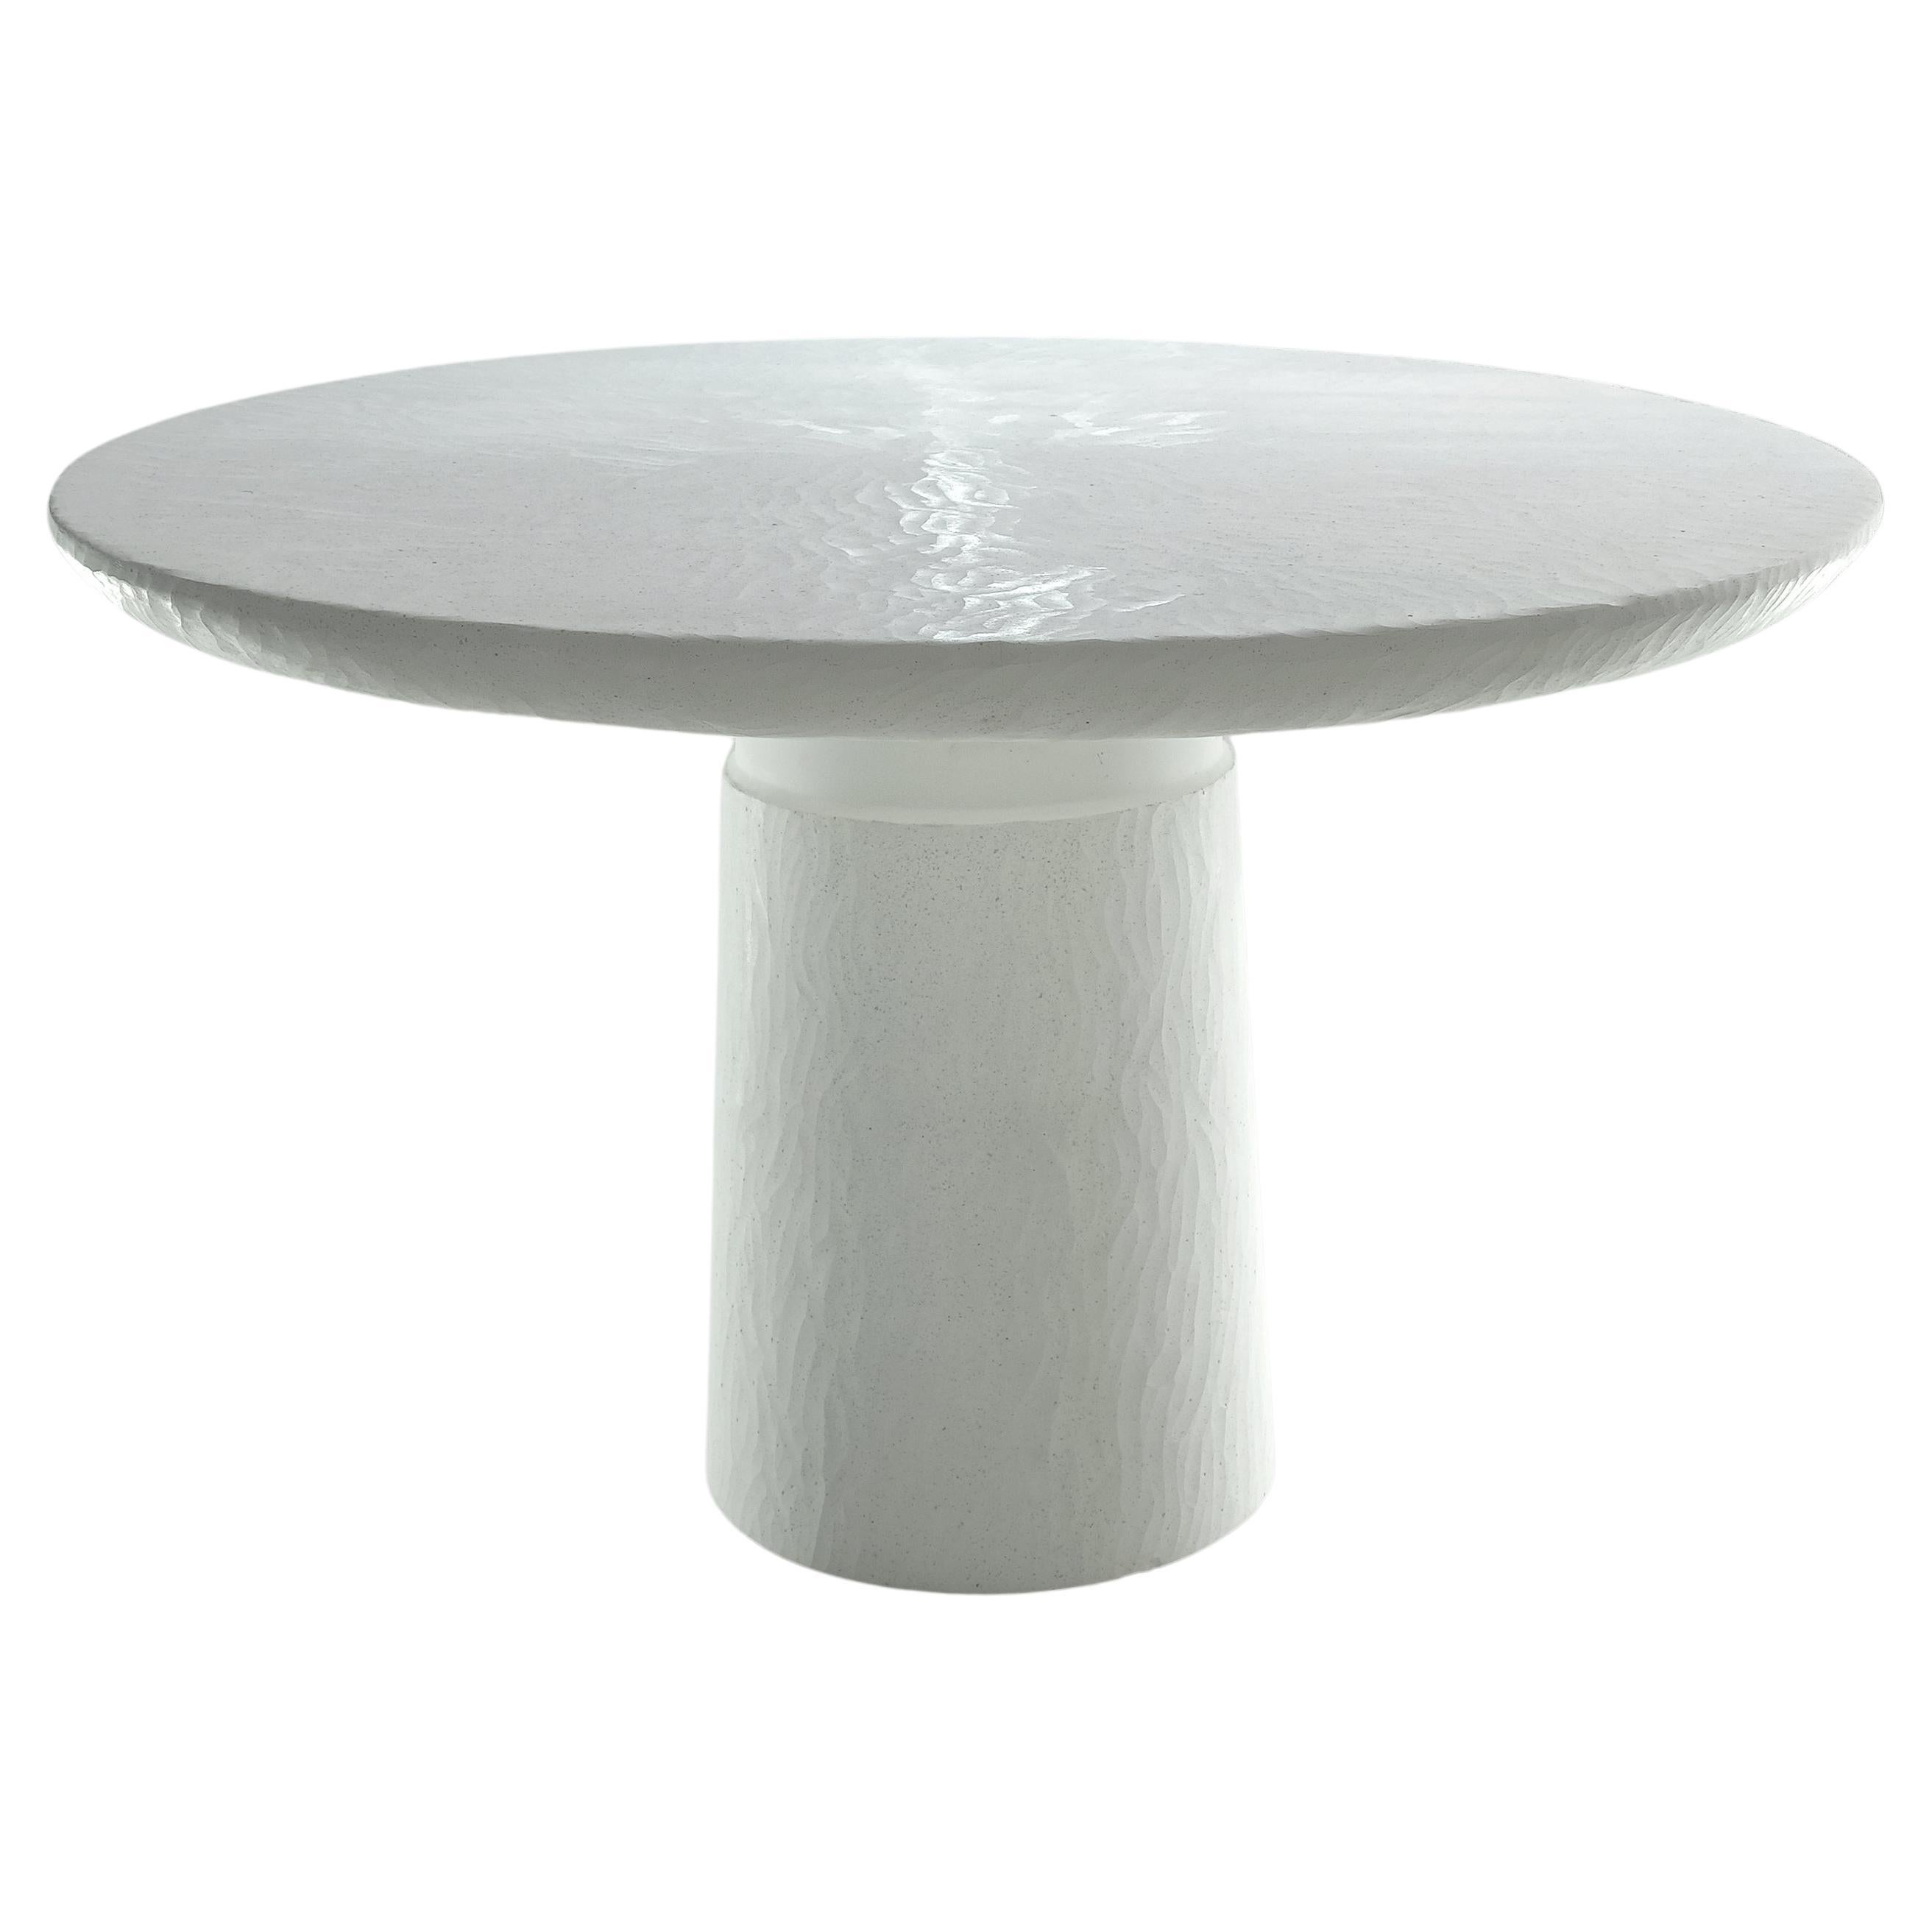 Table organique sculptée en pierre moulée blanche d'Alentes Atelier